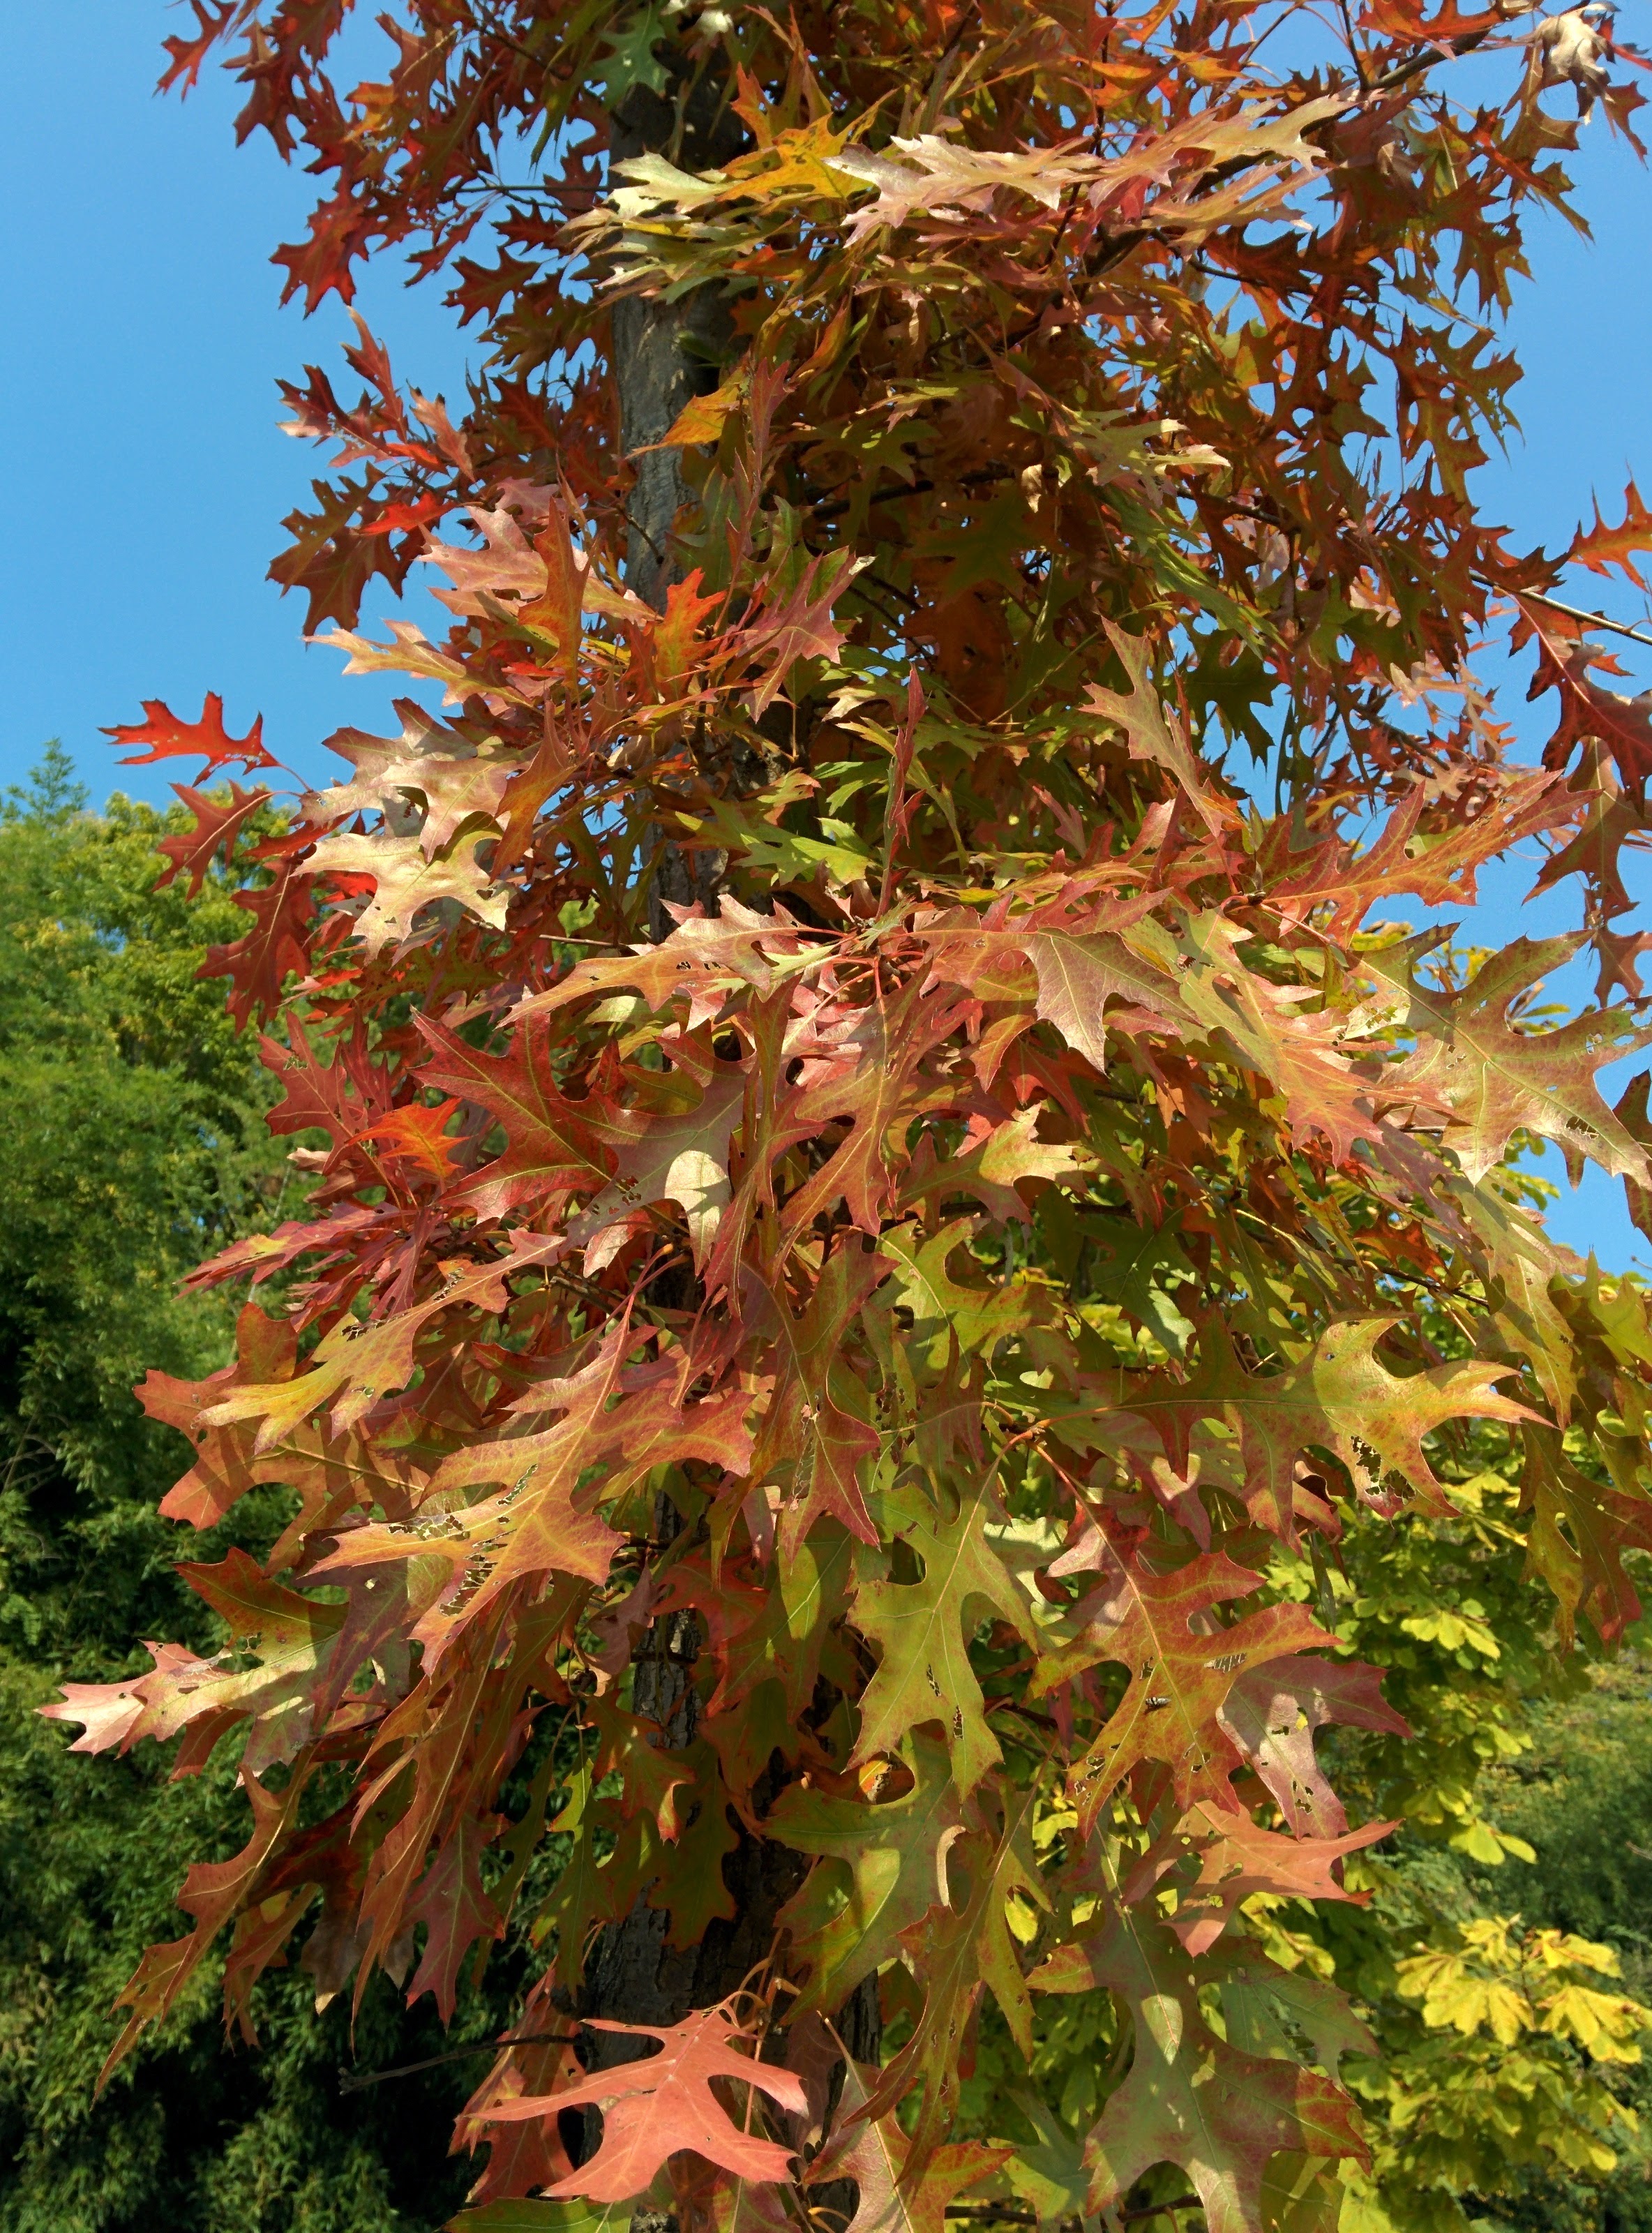 IMG_20151029_120917.jpg 드디어 이름을 알게 된 이쁜 단풍잎 나무... 대왕참나무